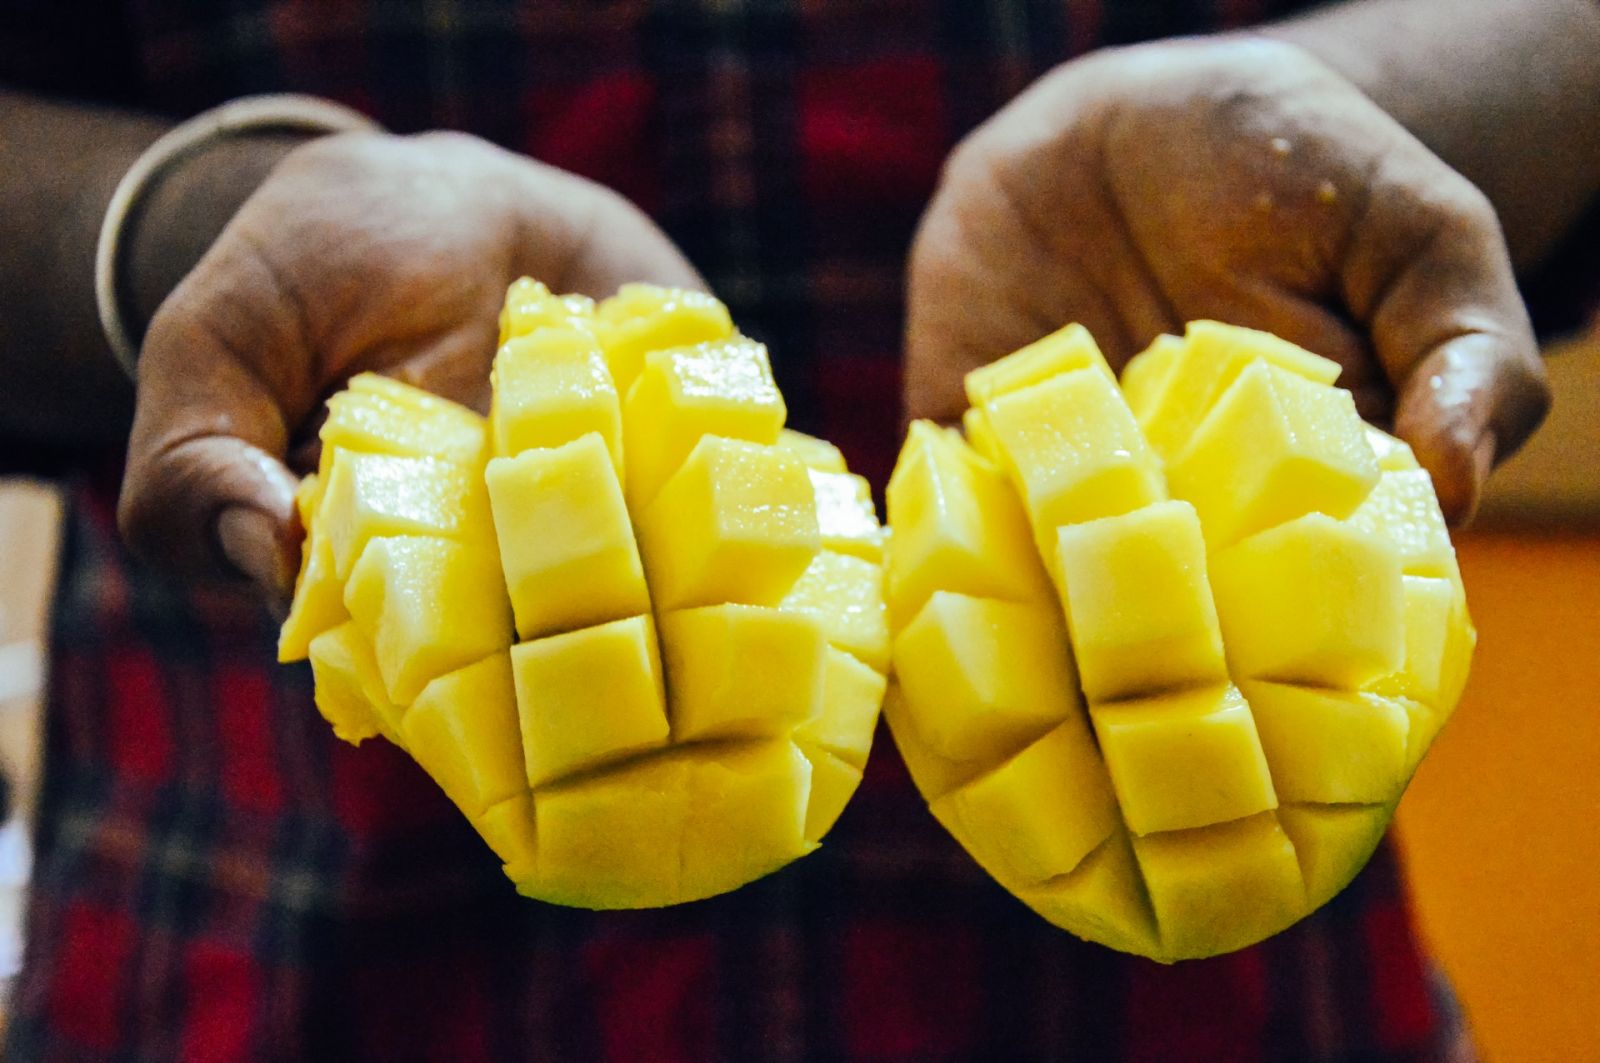 Sliced mango being held